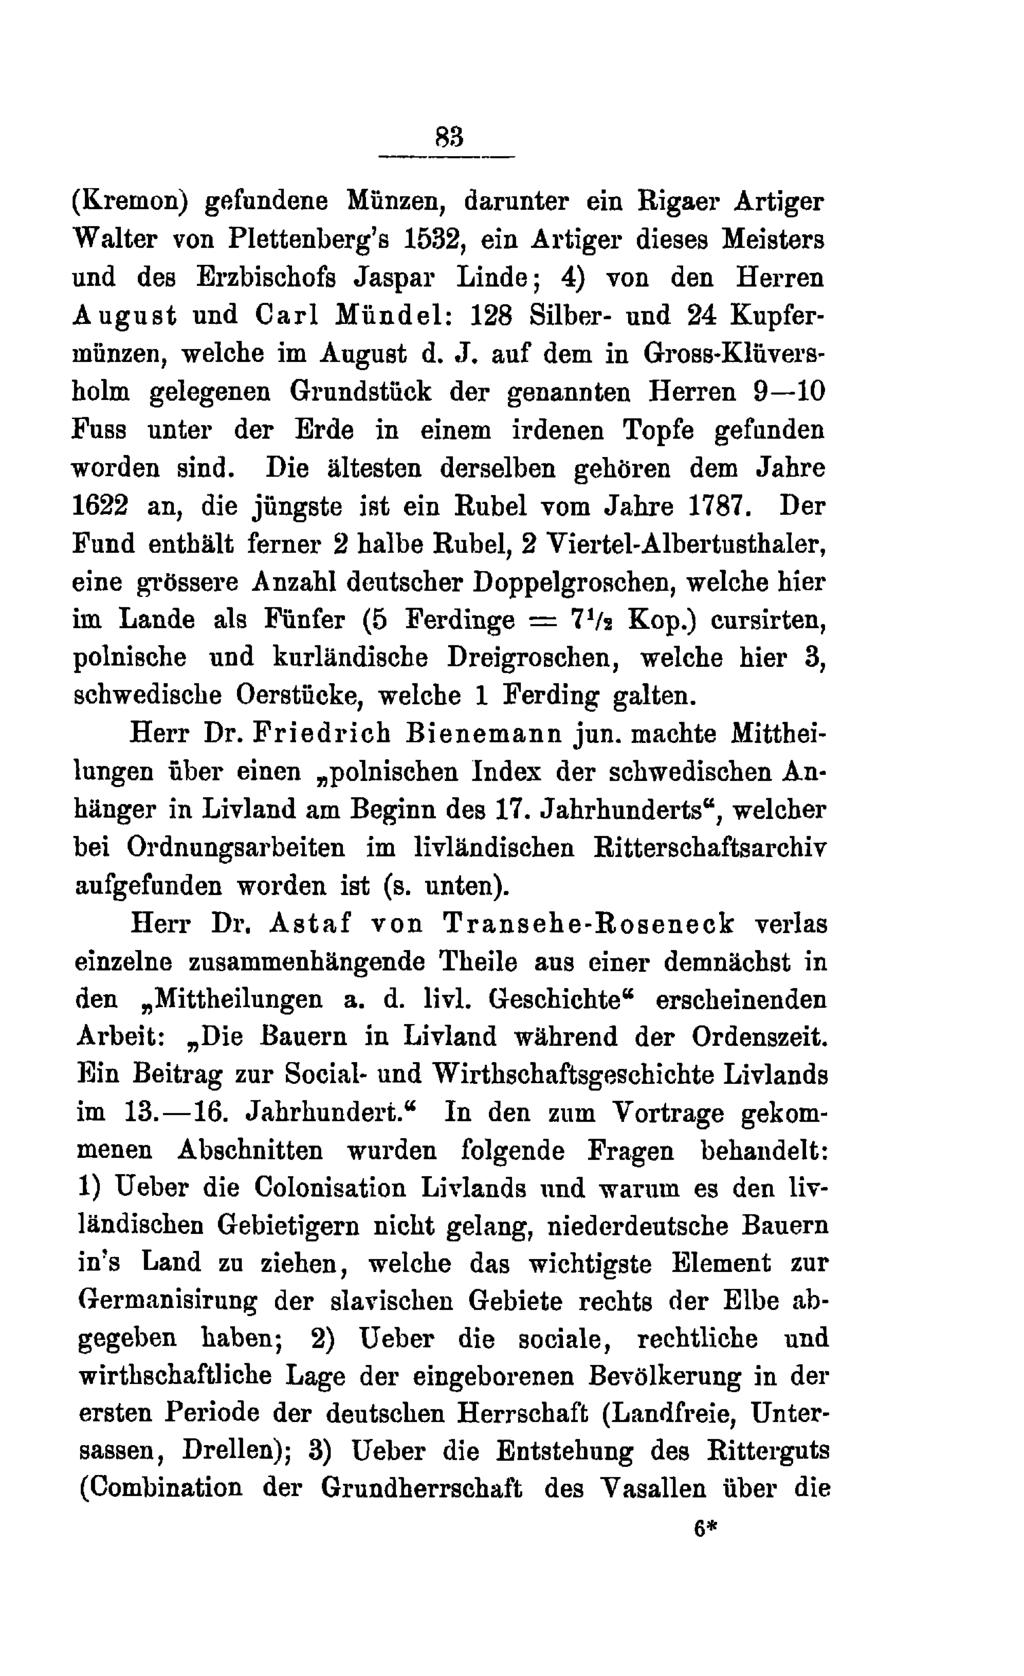 83 (Kremon) gefundene Münzen, darunter ein Rigaer Artiger Walter von Plettenberg's 1532, ein Artiger dieses Meisters und des Erzbischofs Jaspar Linde; 4) von den Herren August und Carl Mündel: 128